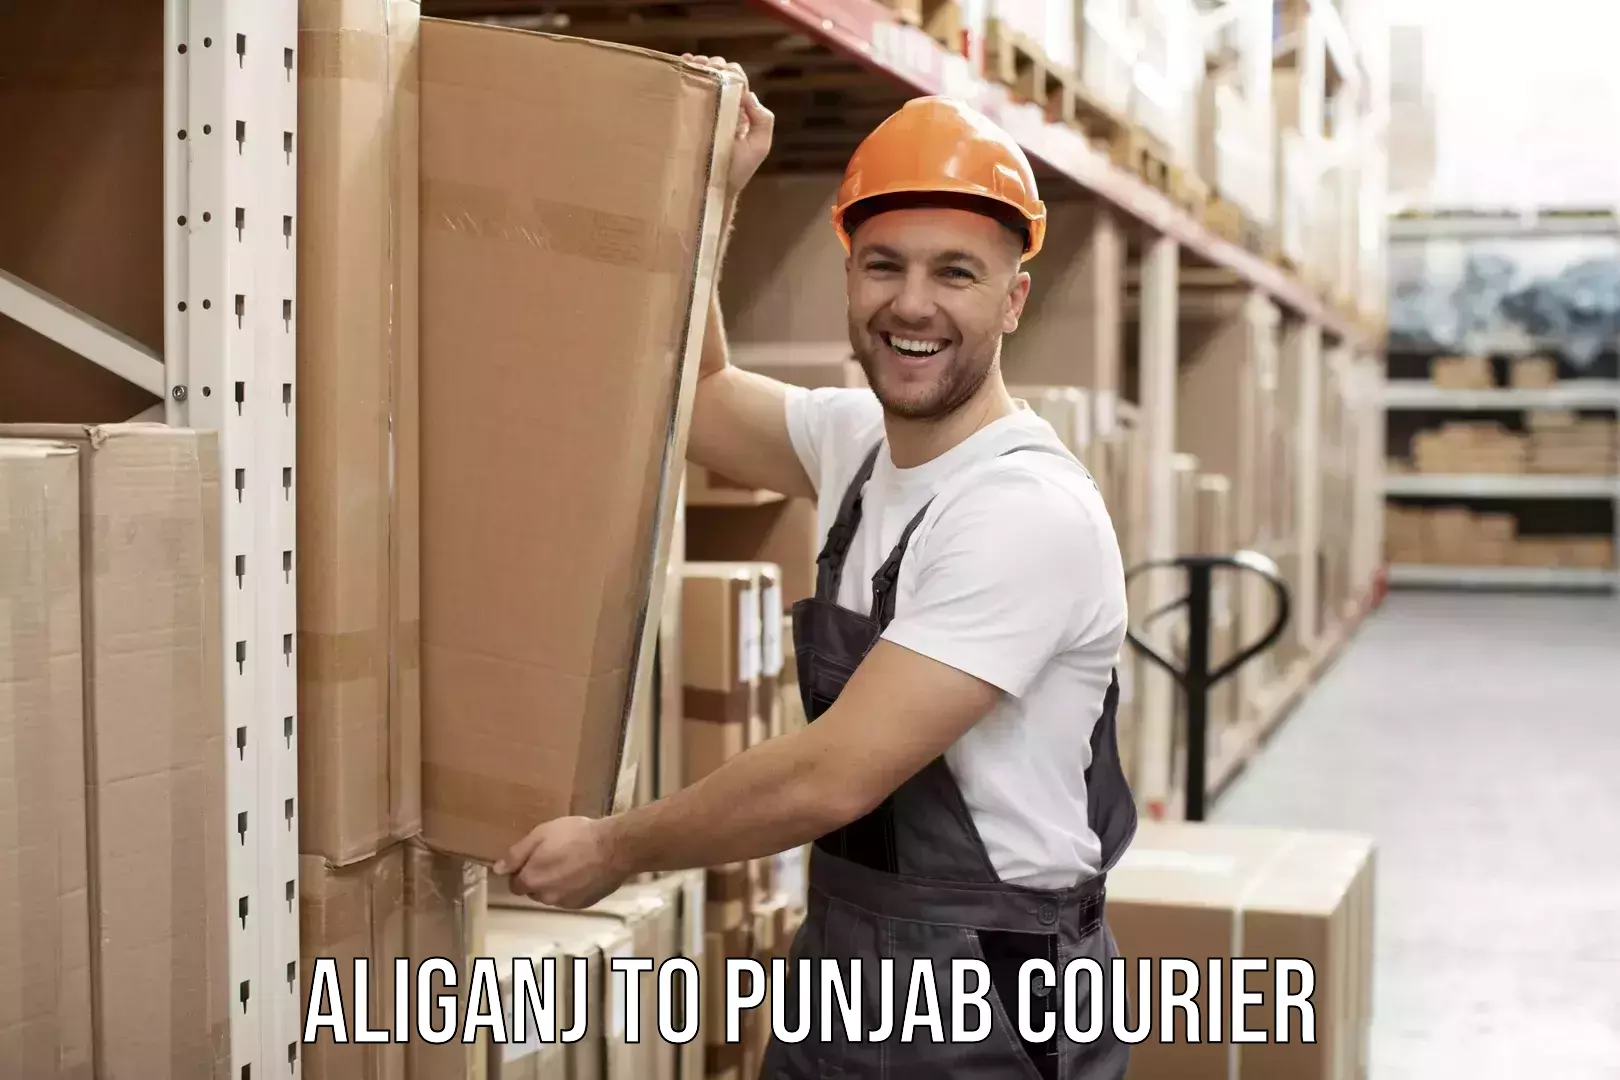 Quick household moving Aliganj to Punjab